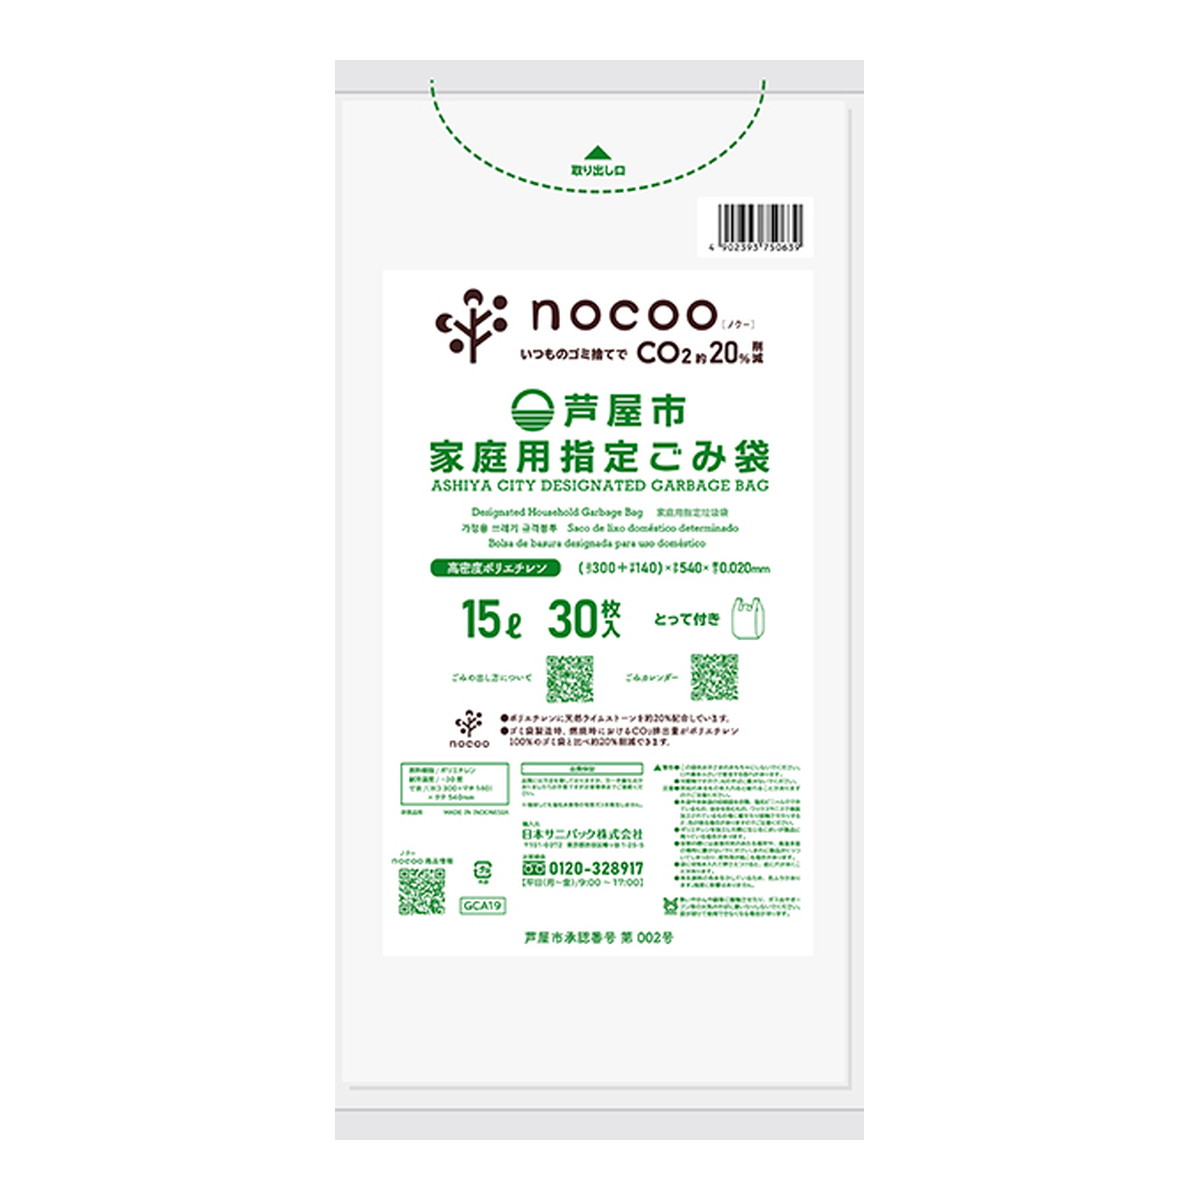 日本サニパック 自治体ゴミ袋 GCA19 芦屋市 家庭用指定ごみ袋 とって付き 15L 30枚入